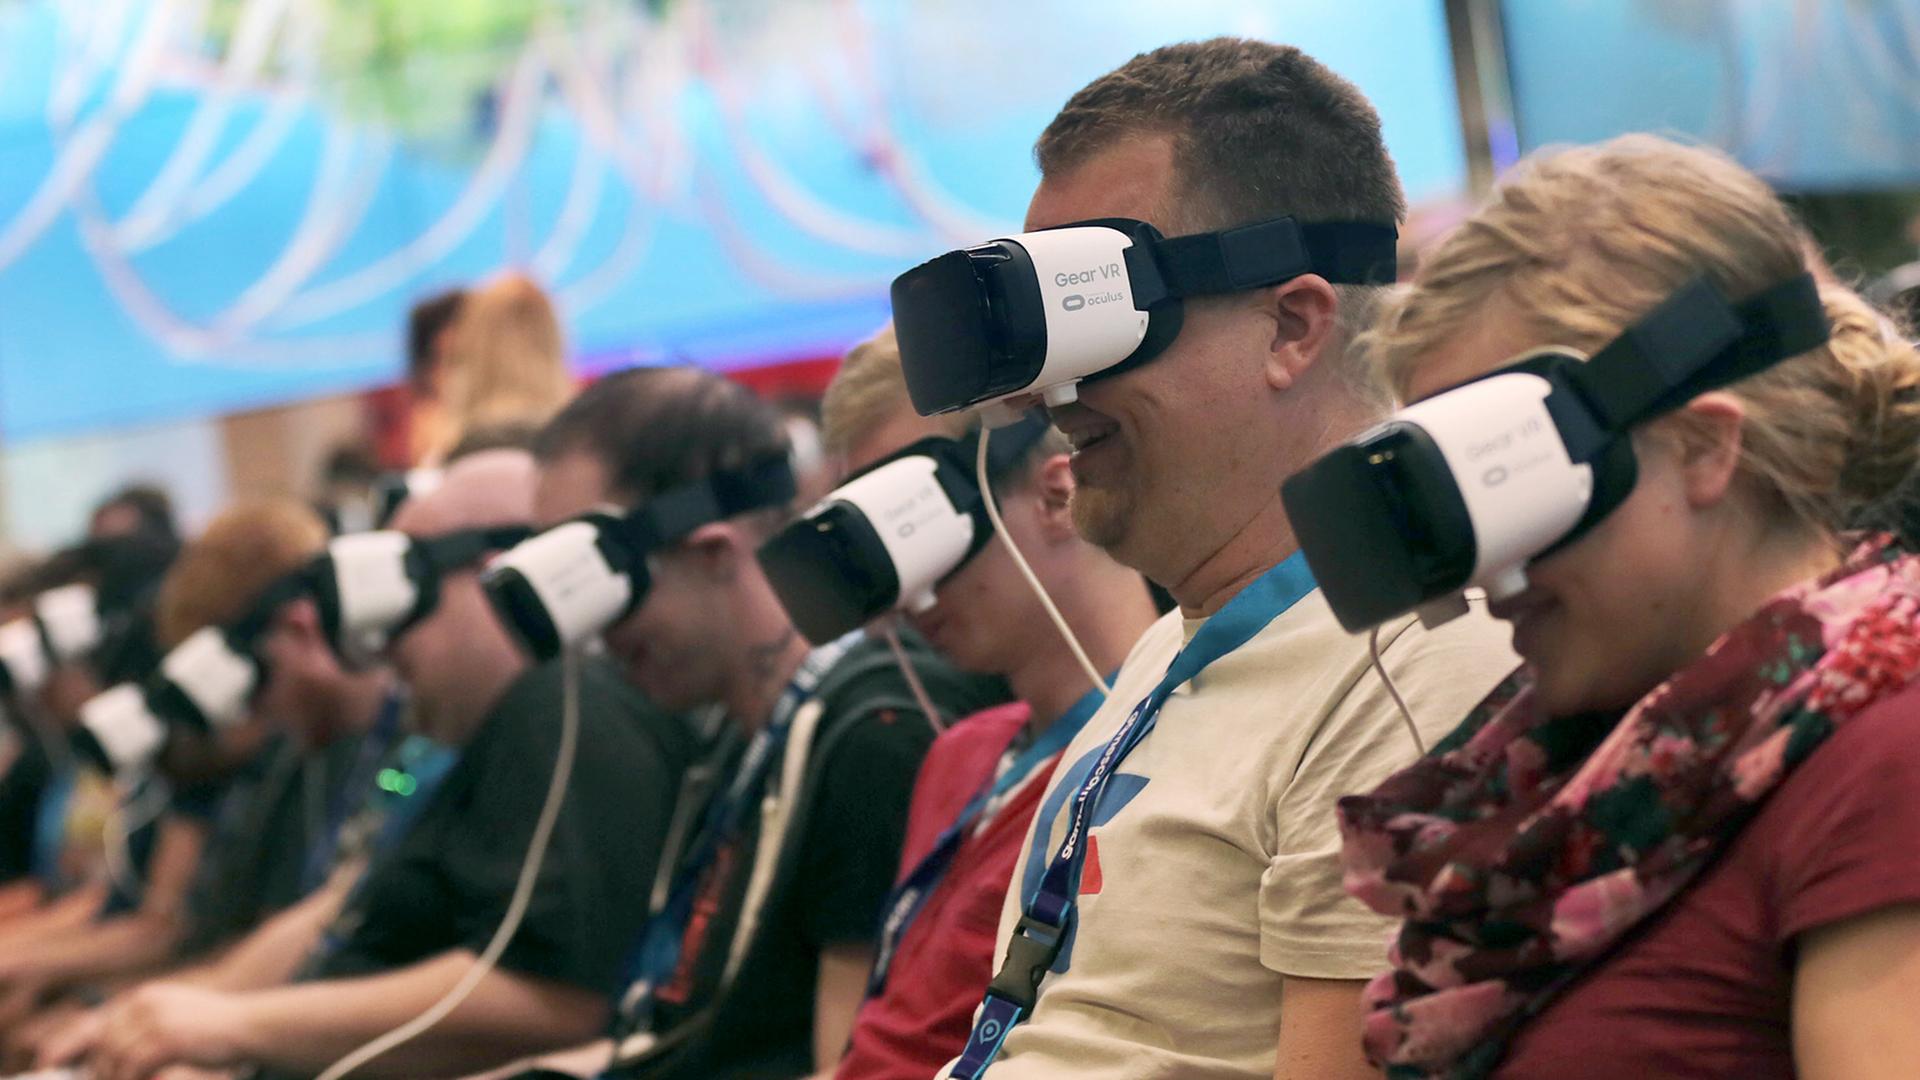 Besucher der Gamescom 2016 in Köln tragen VR-Brillen